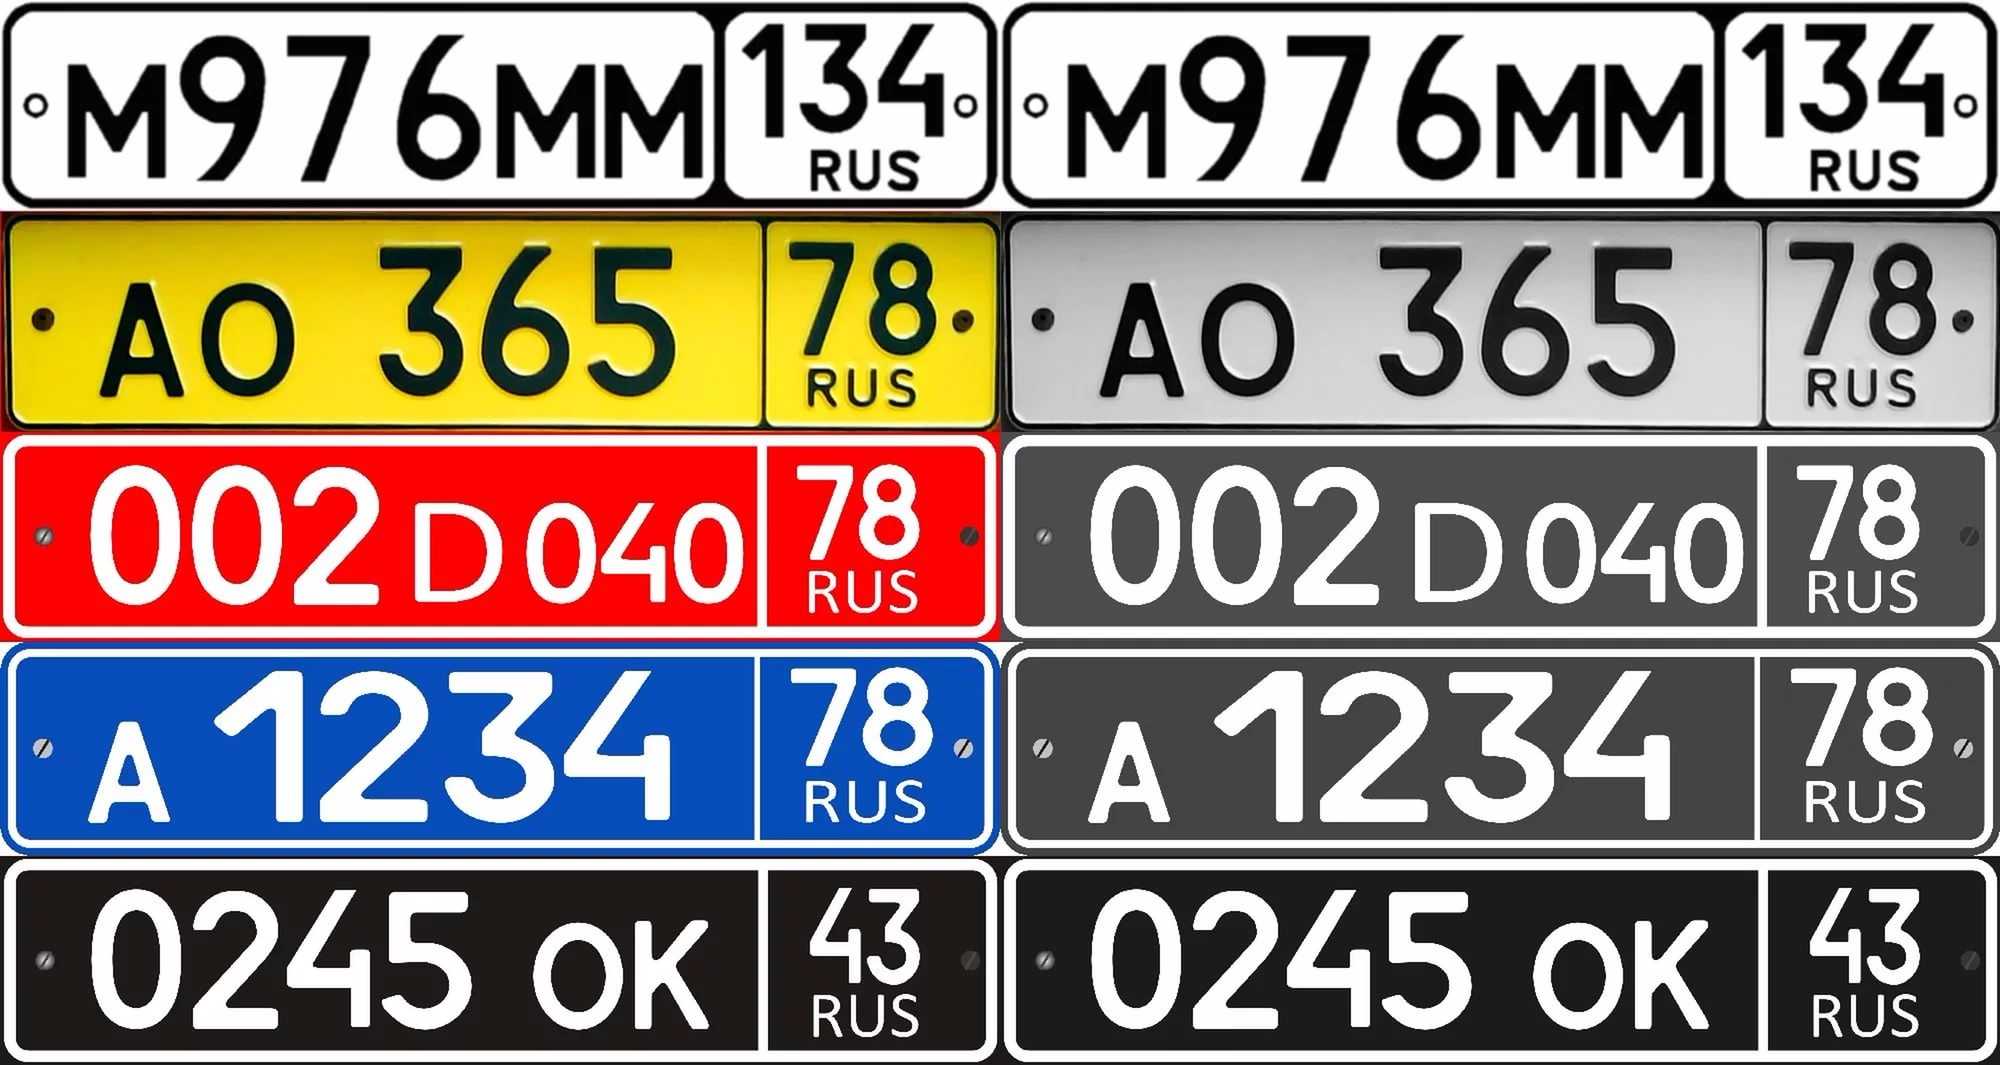 Квадратные номера на машинах — законны ли они?